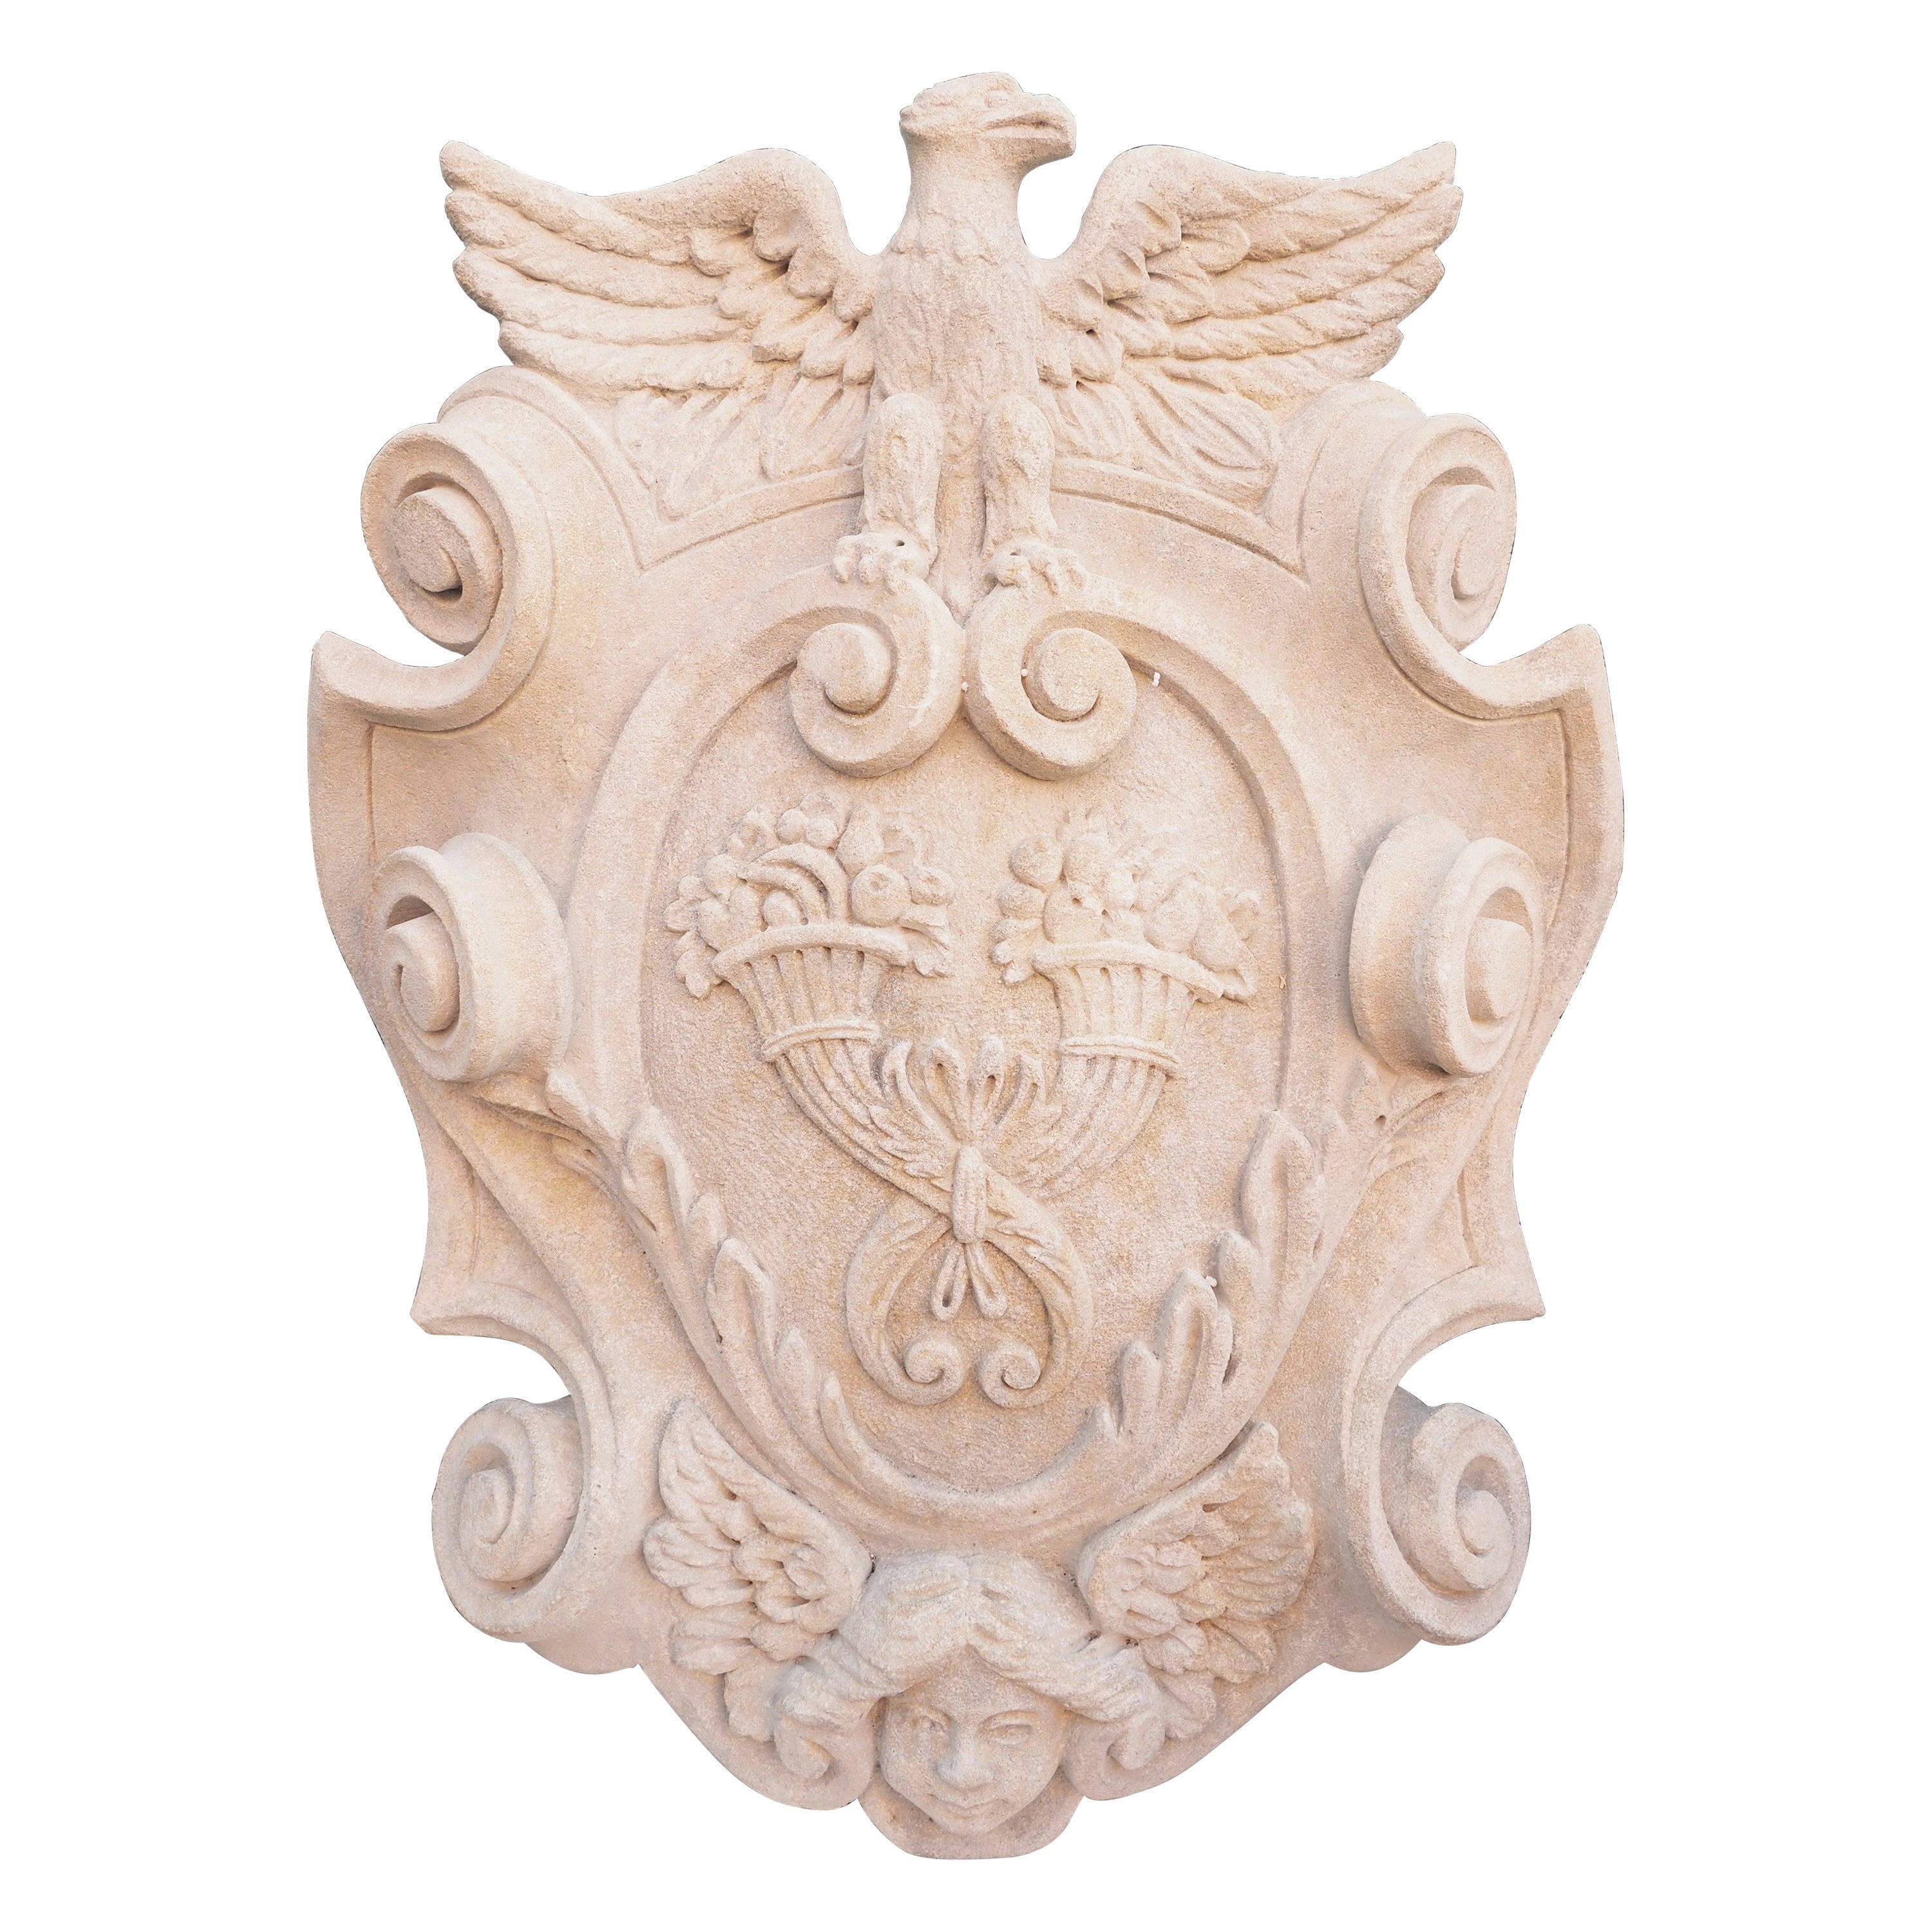 Geschnitzte italienische Stemma-Plakette mit Nussbaum, Adler und geflügeltem Engel